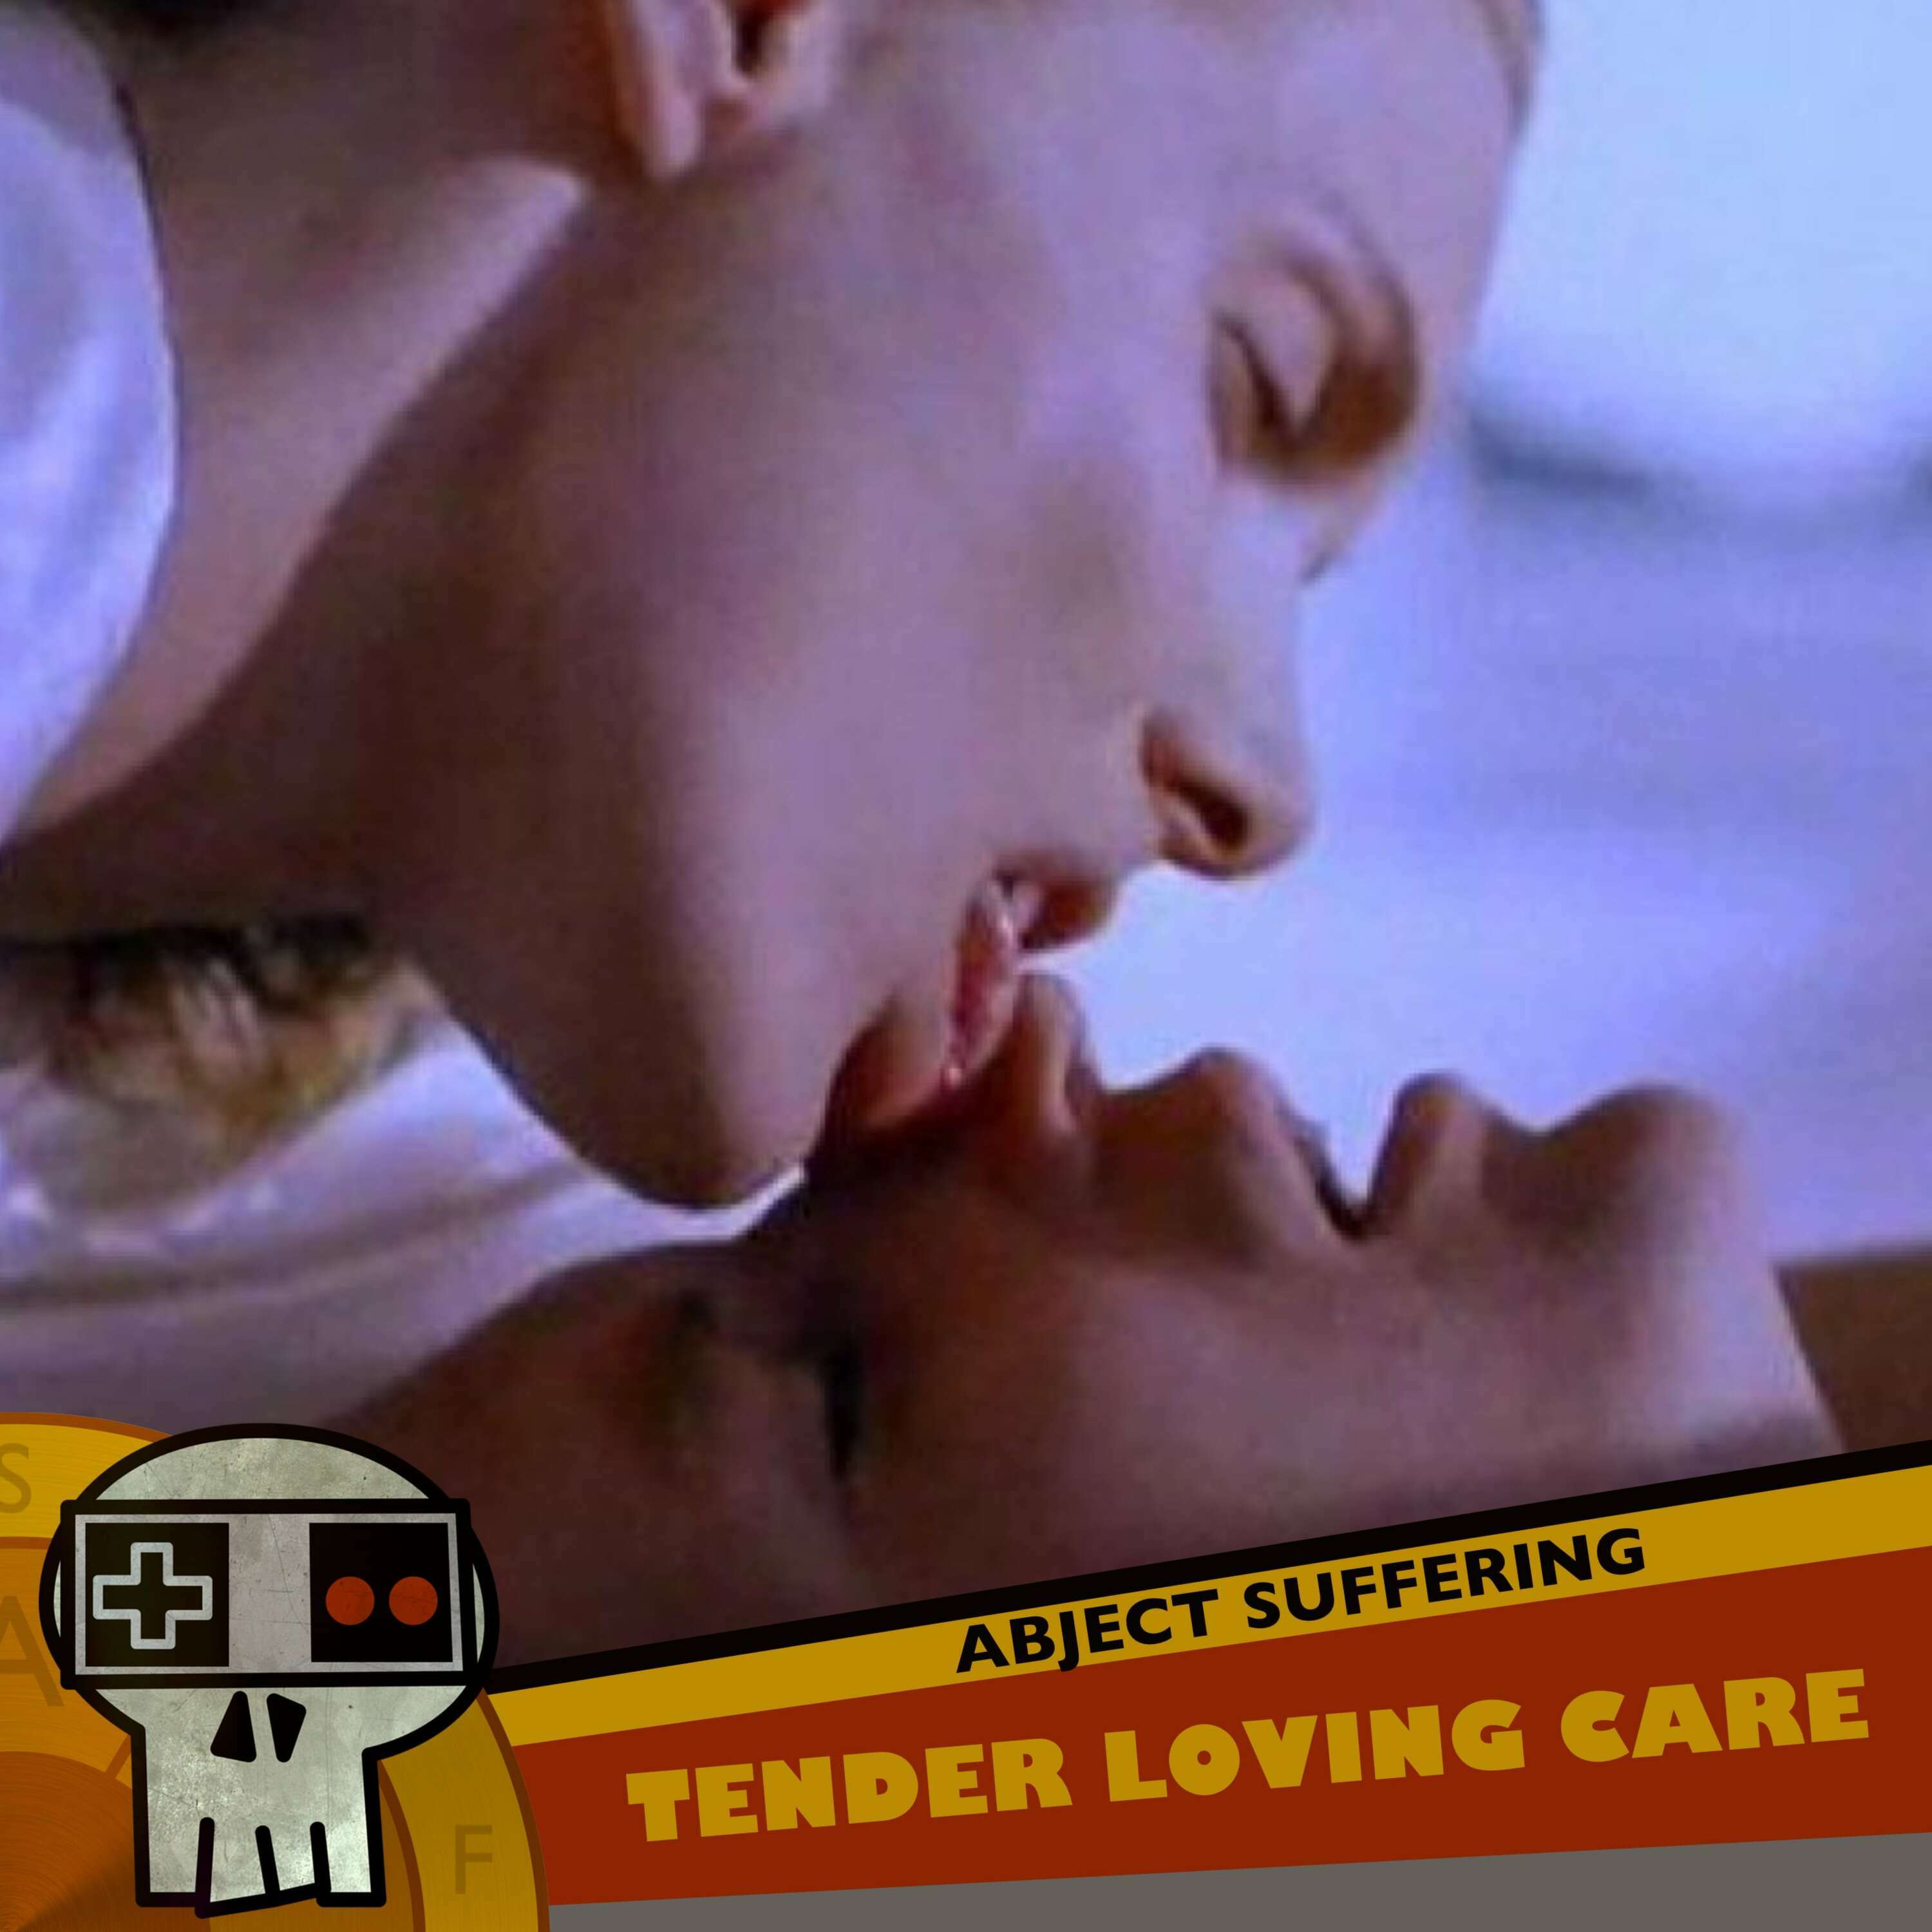 541: Tender Loving Care